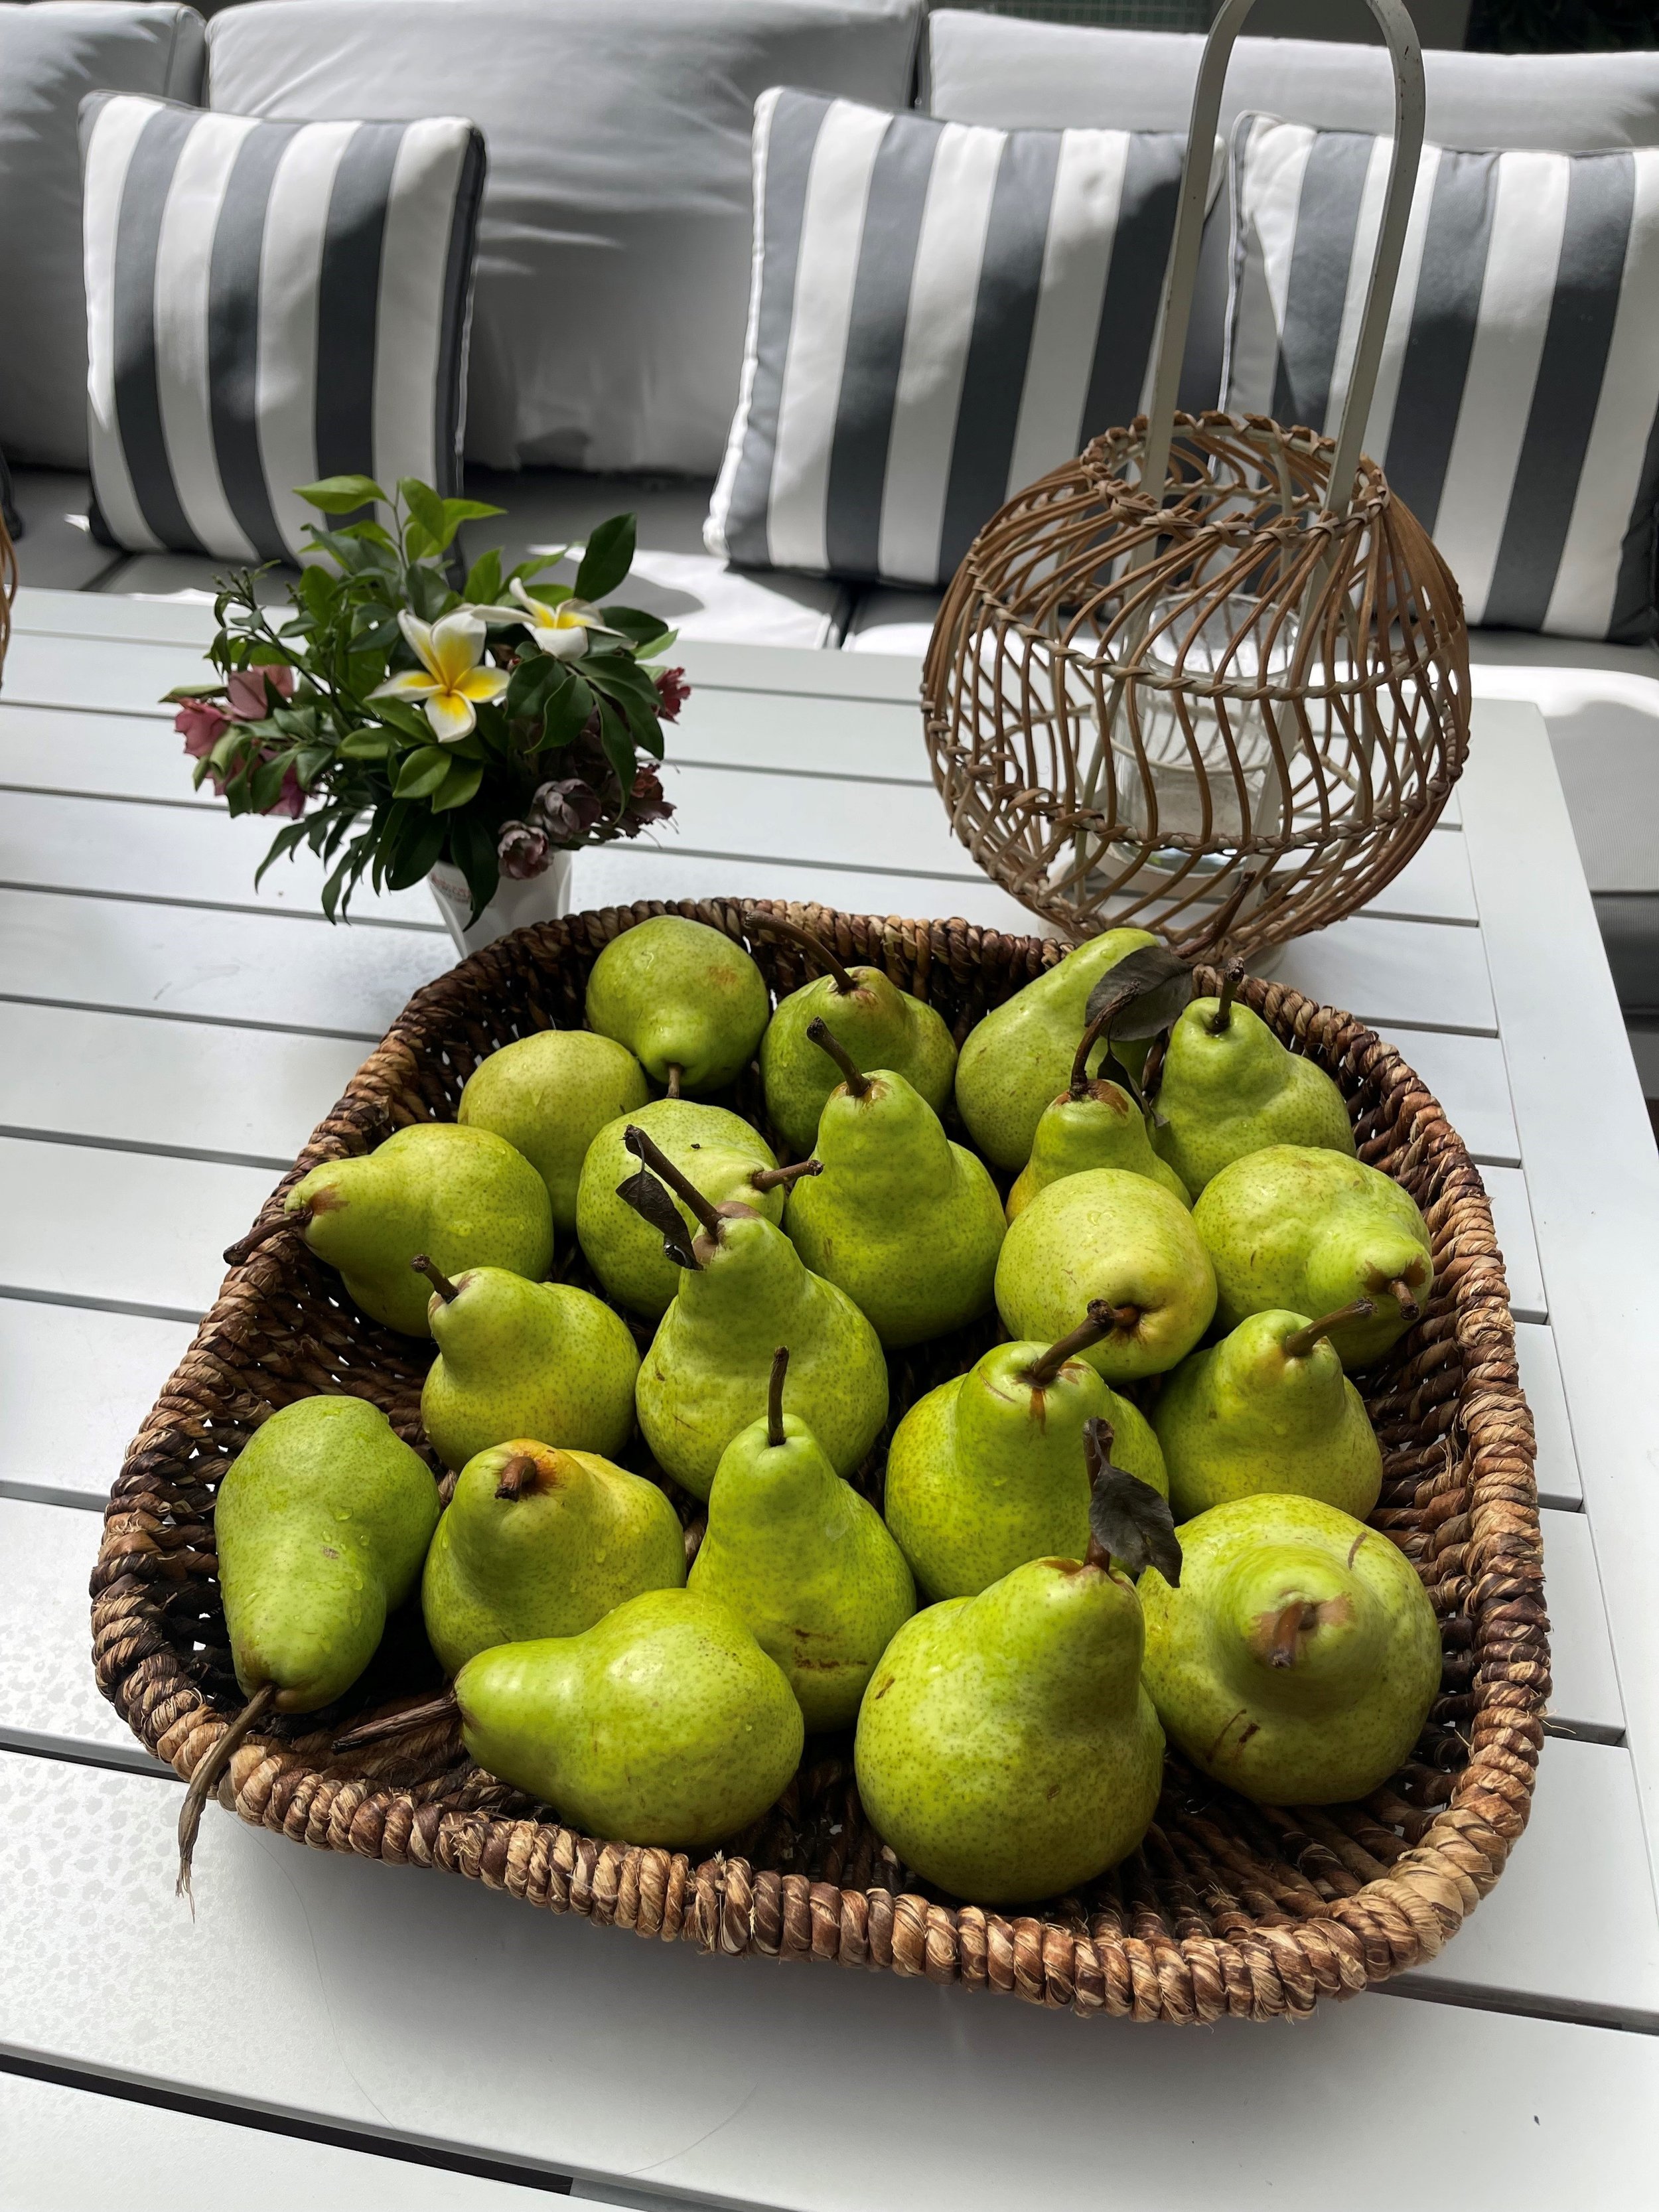 Pears in table.jpg